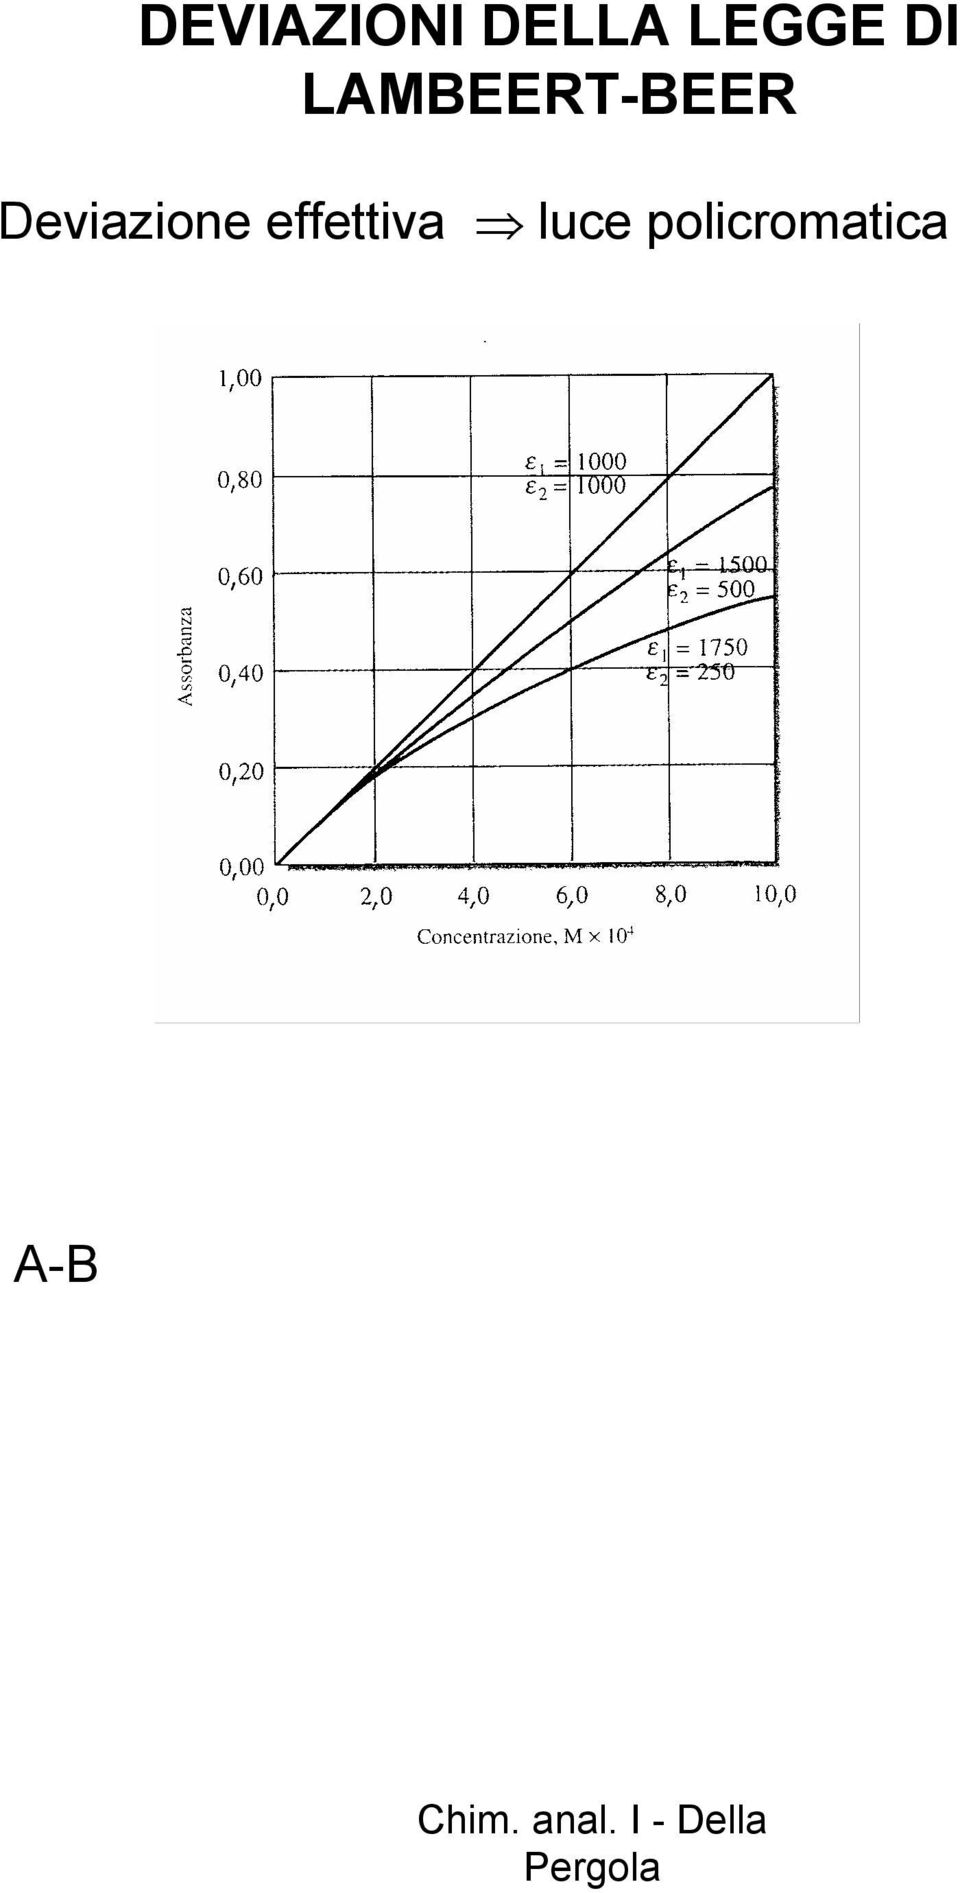 [A][B]/[A-B] Il rapporta [A]/[A-B] dipende dalla concentrazione, A e